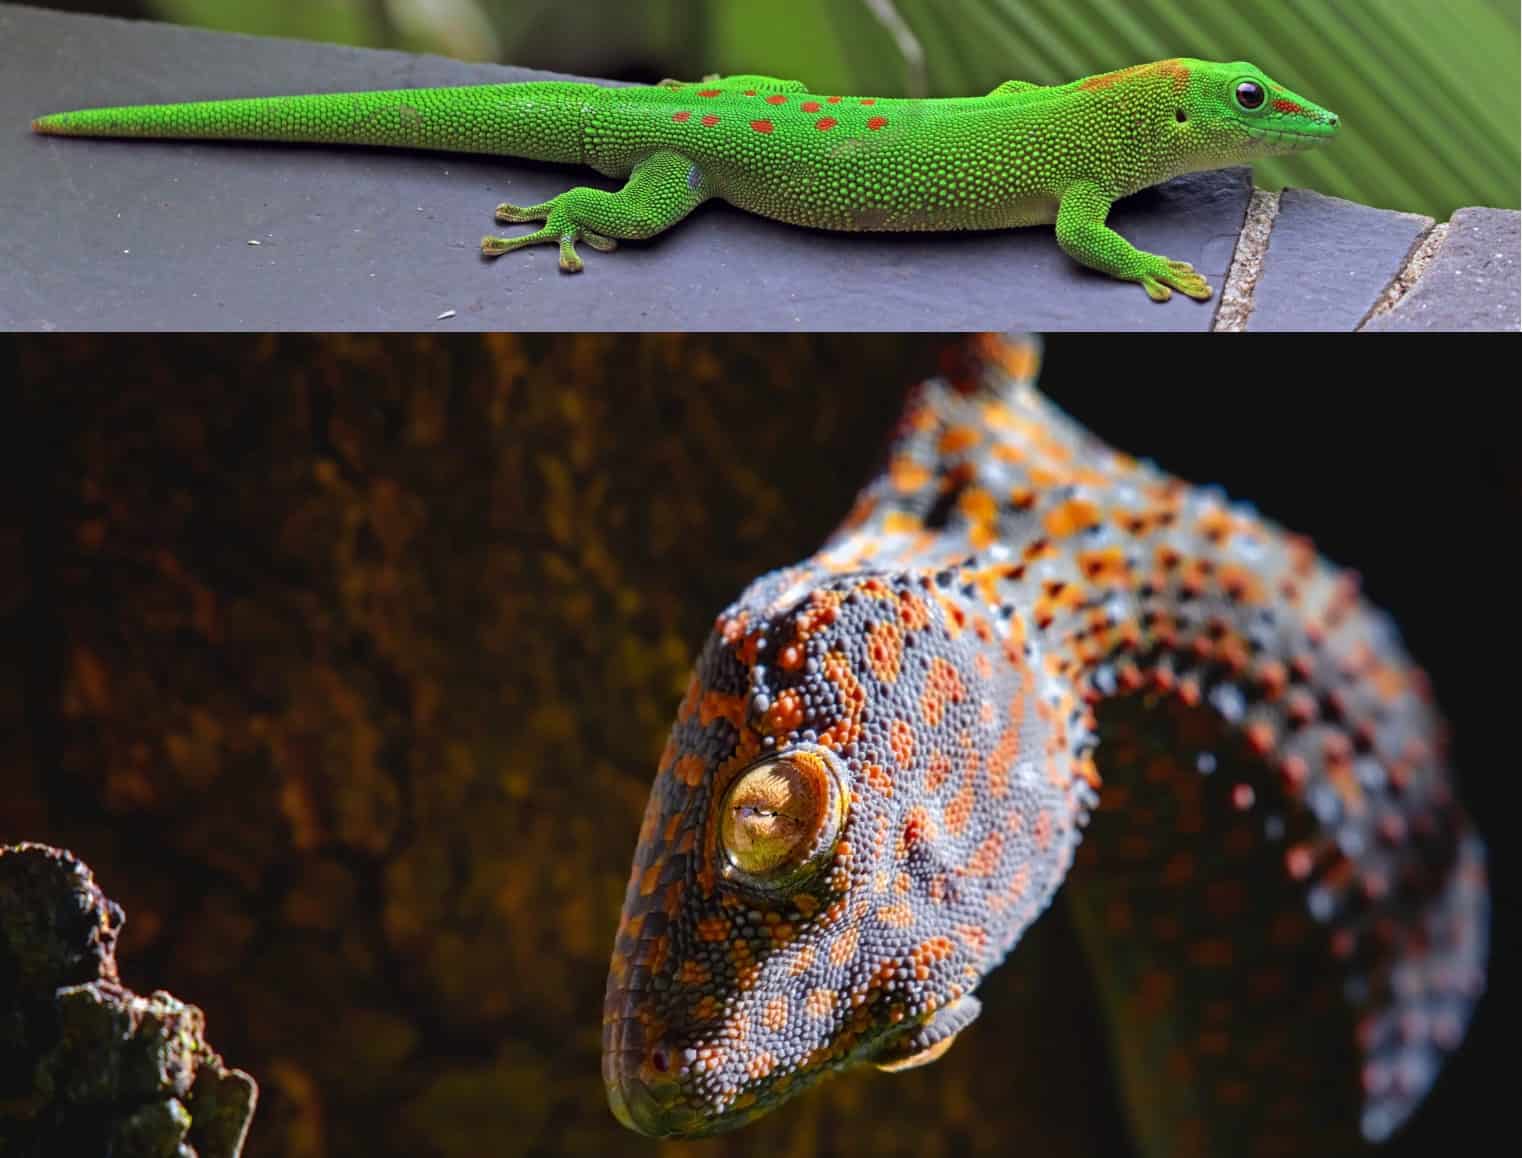 Madagascar Giant Day Geckos vs Tokay Gecko